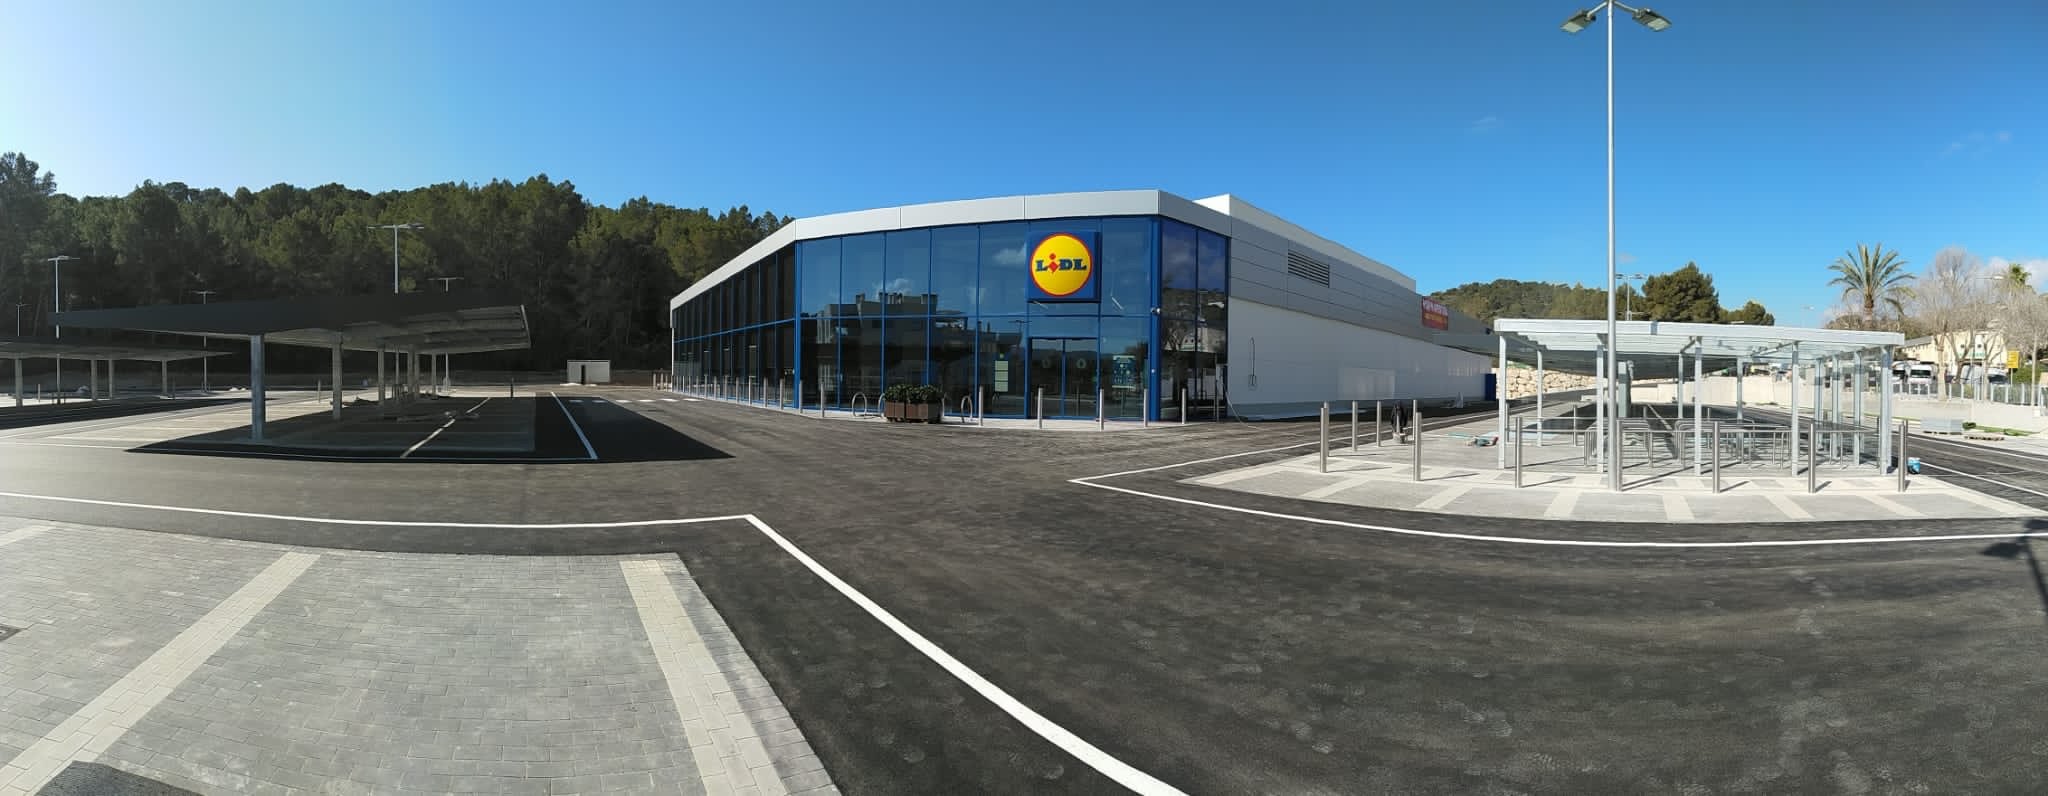 Lidl invierte 3,9 millones de euros en la apertura de una tienda en Mallorca